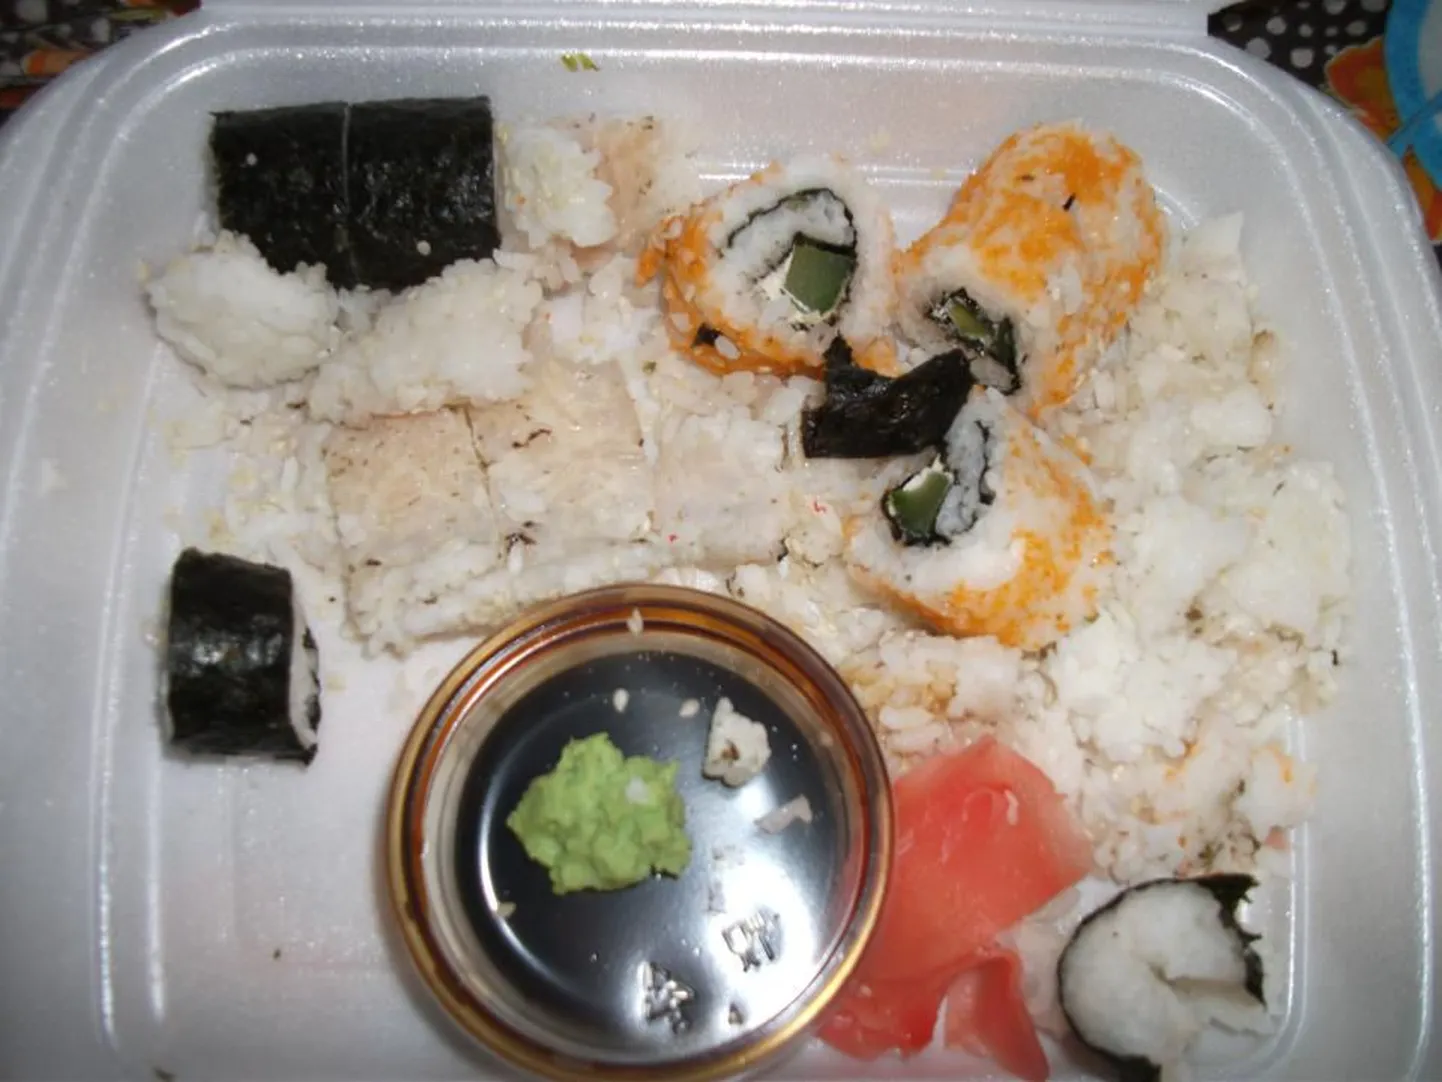 Фотография клиента, получившего "неправильные" суши, распространяется в Facebook